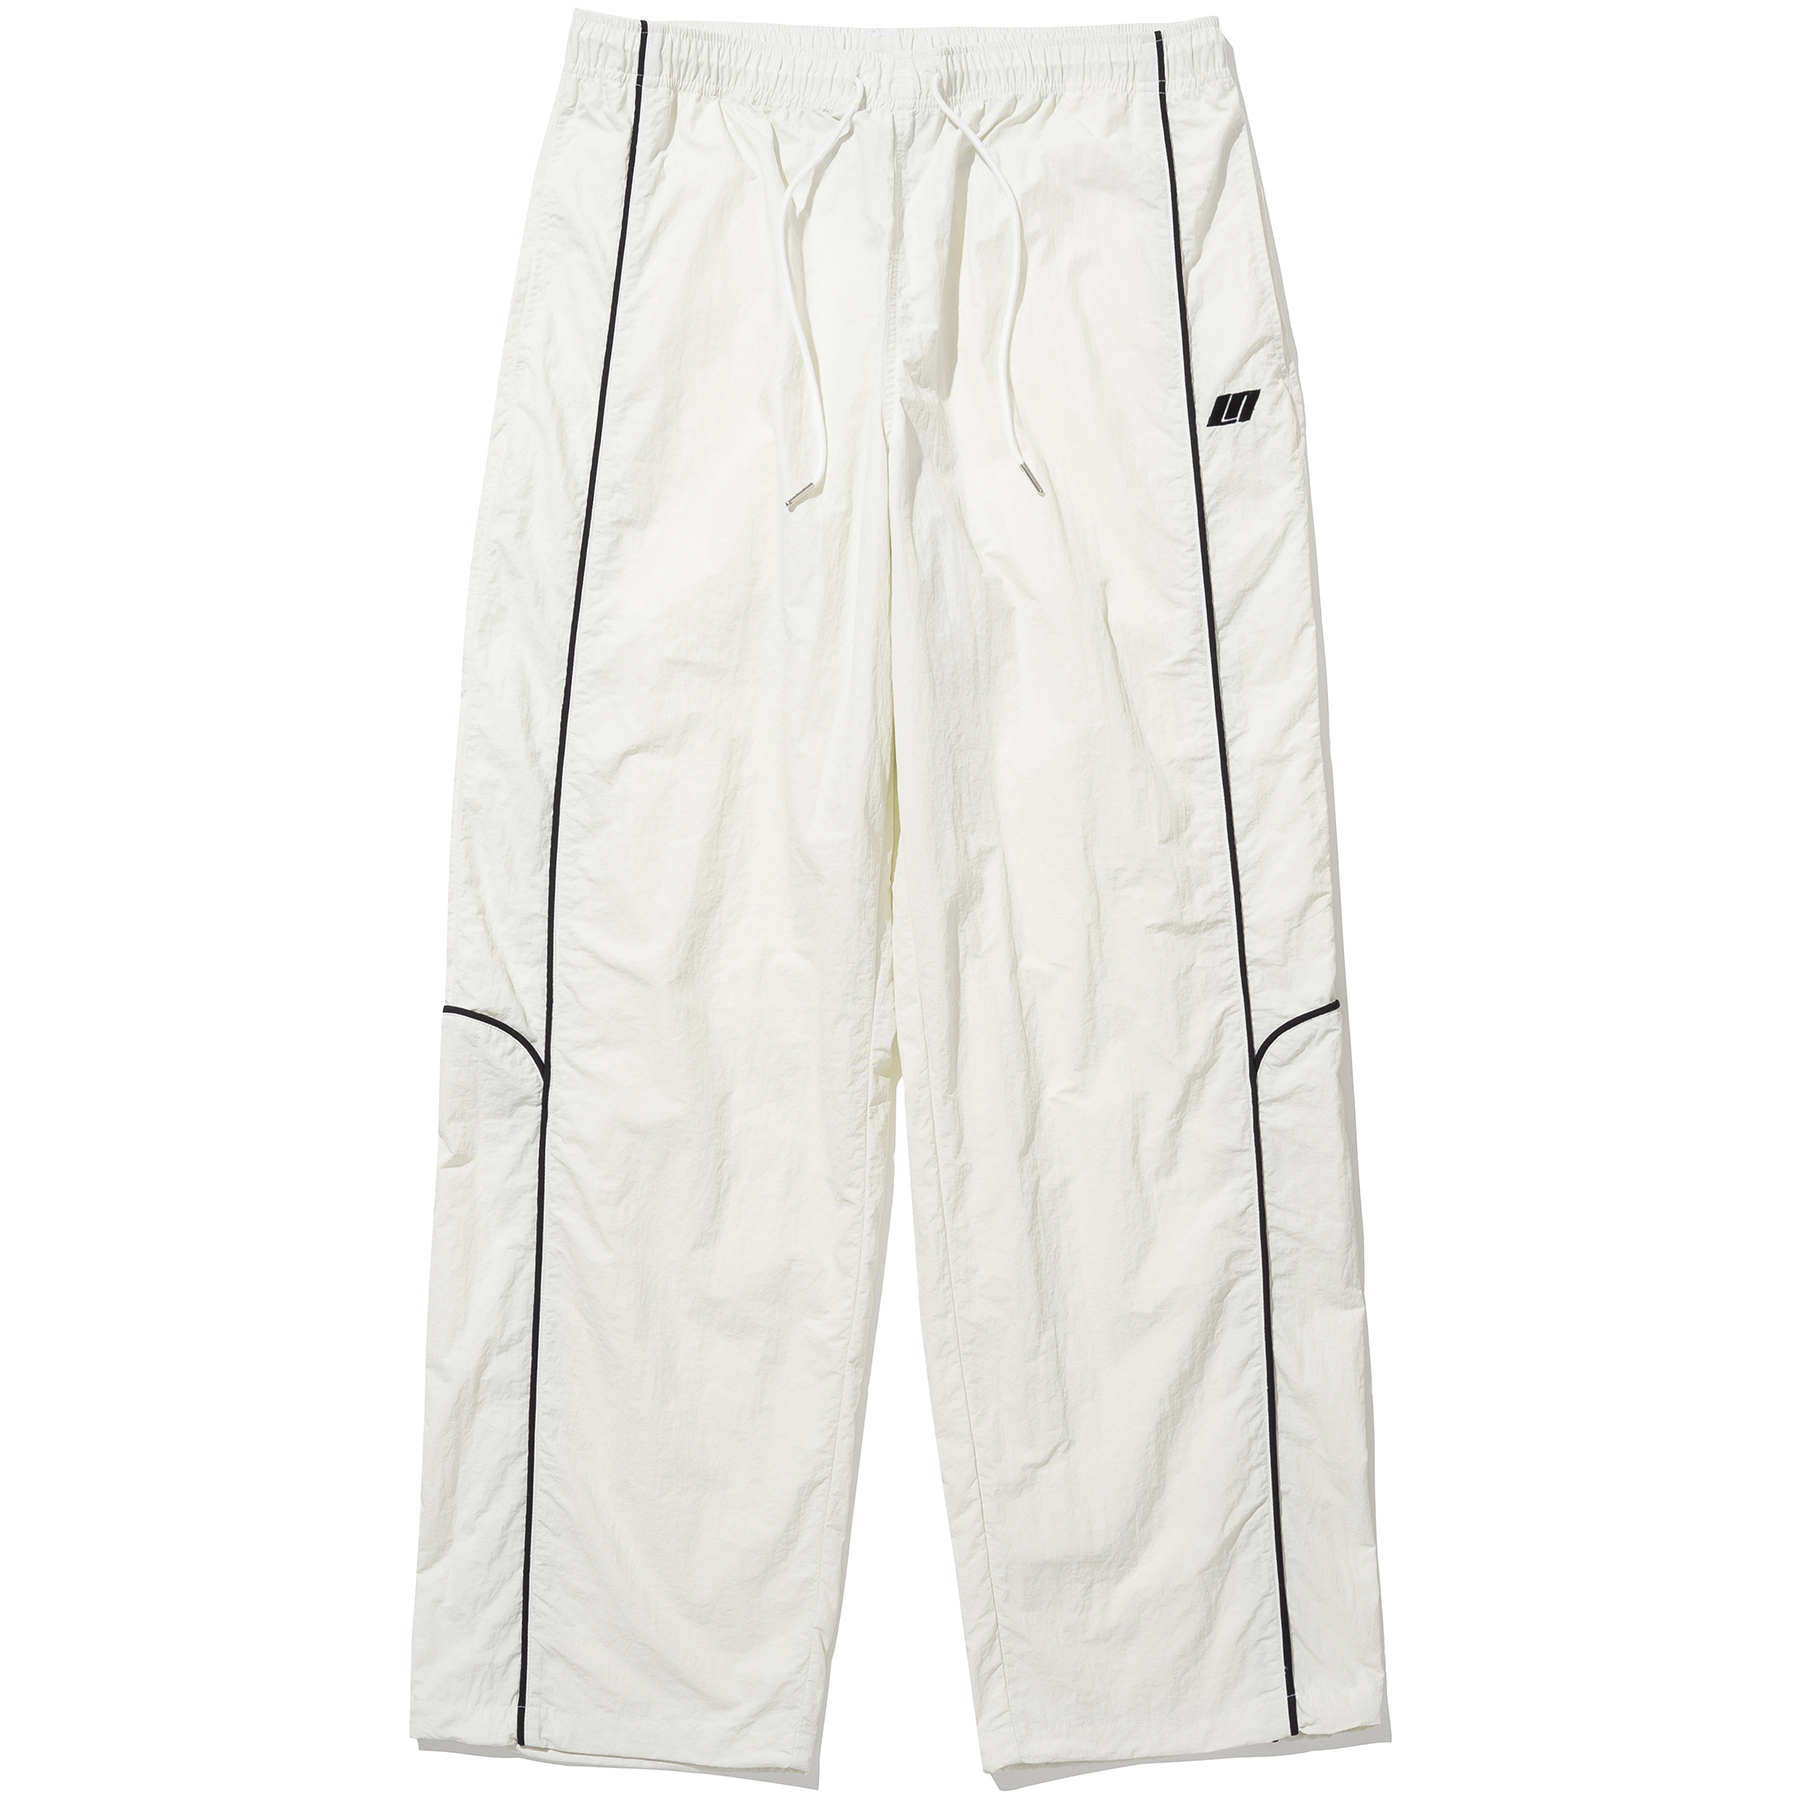 Nylon Racing Pants - White,NOT4NERD